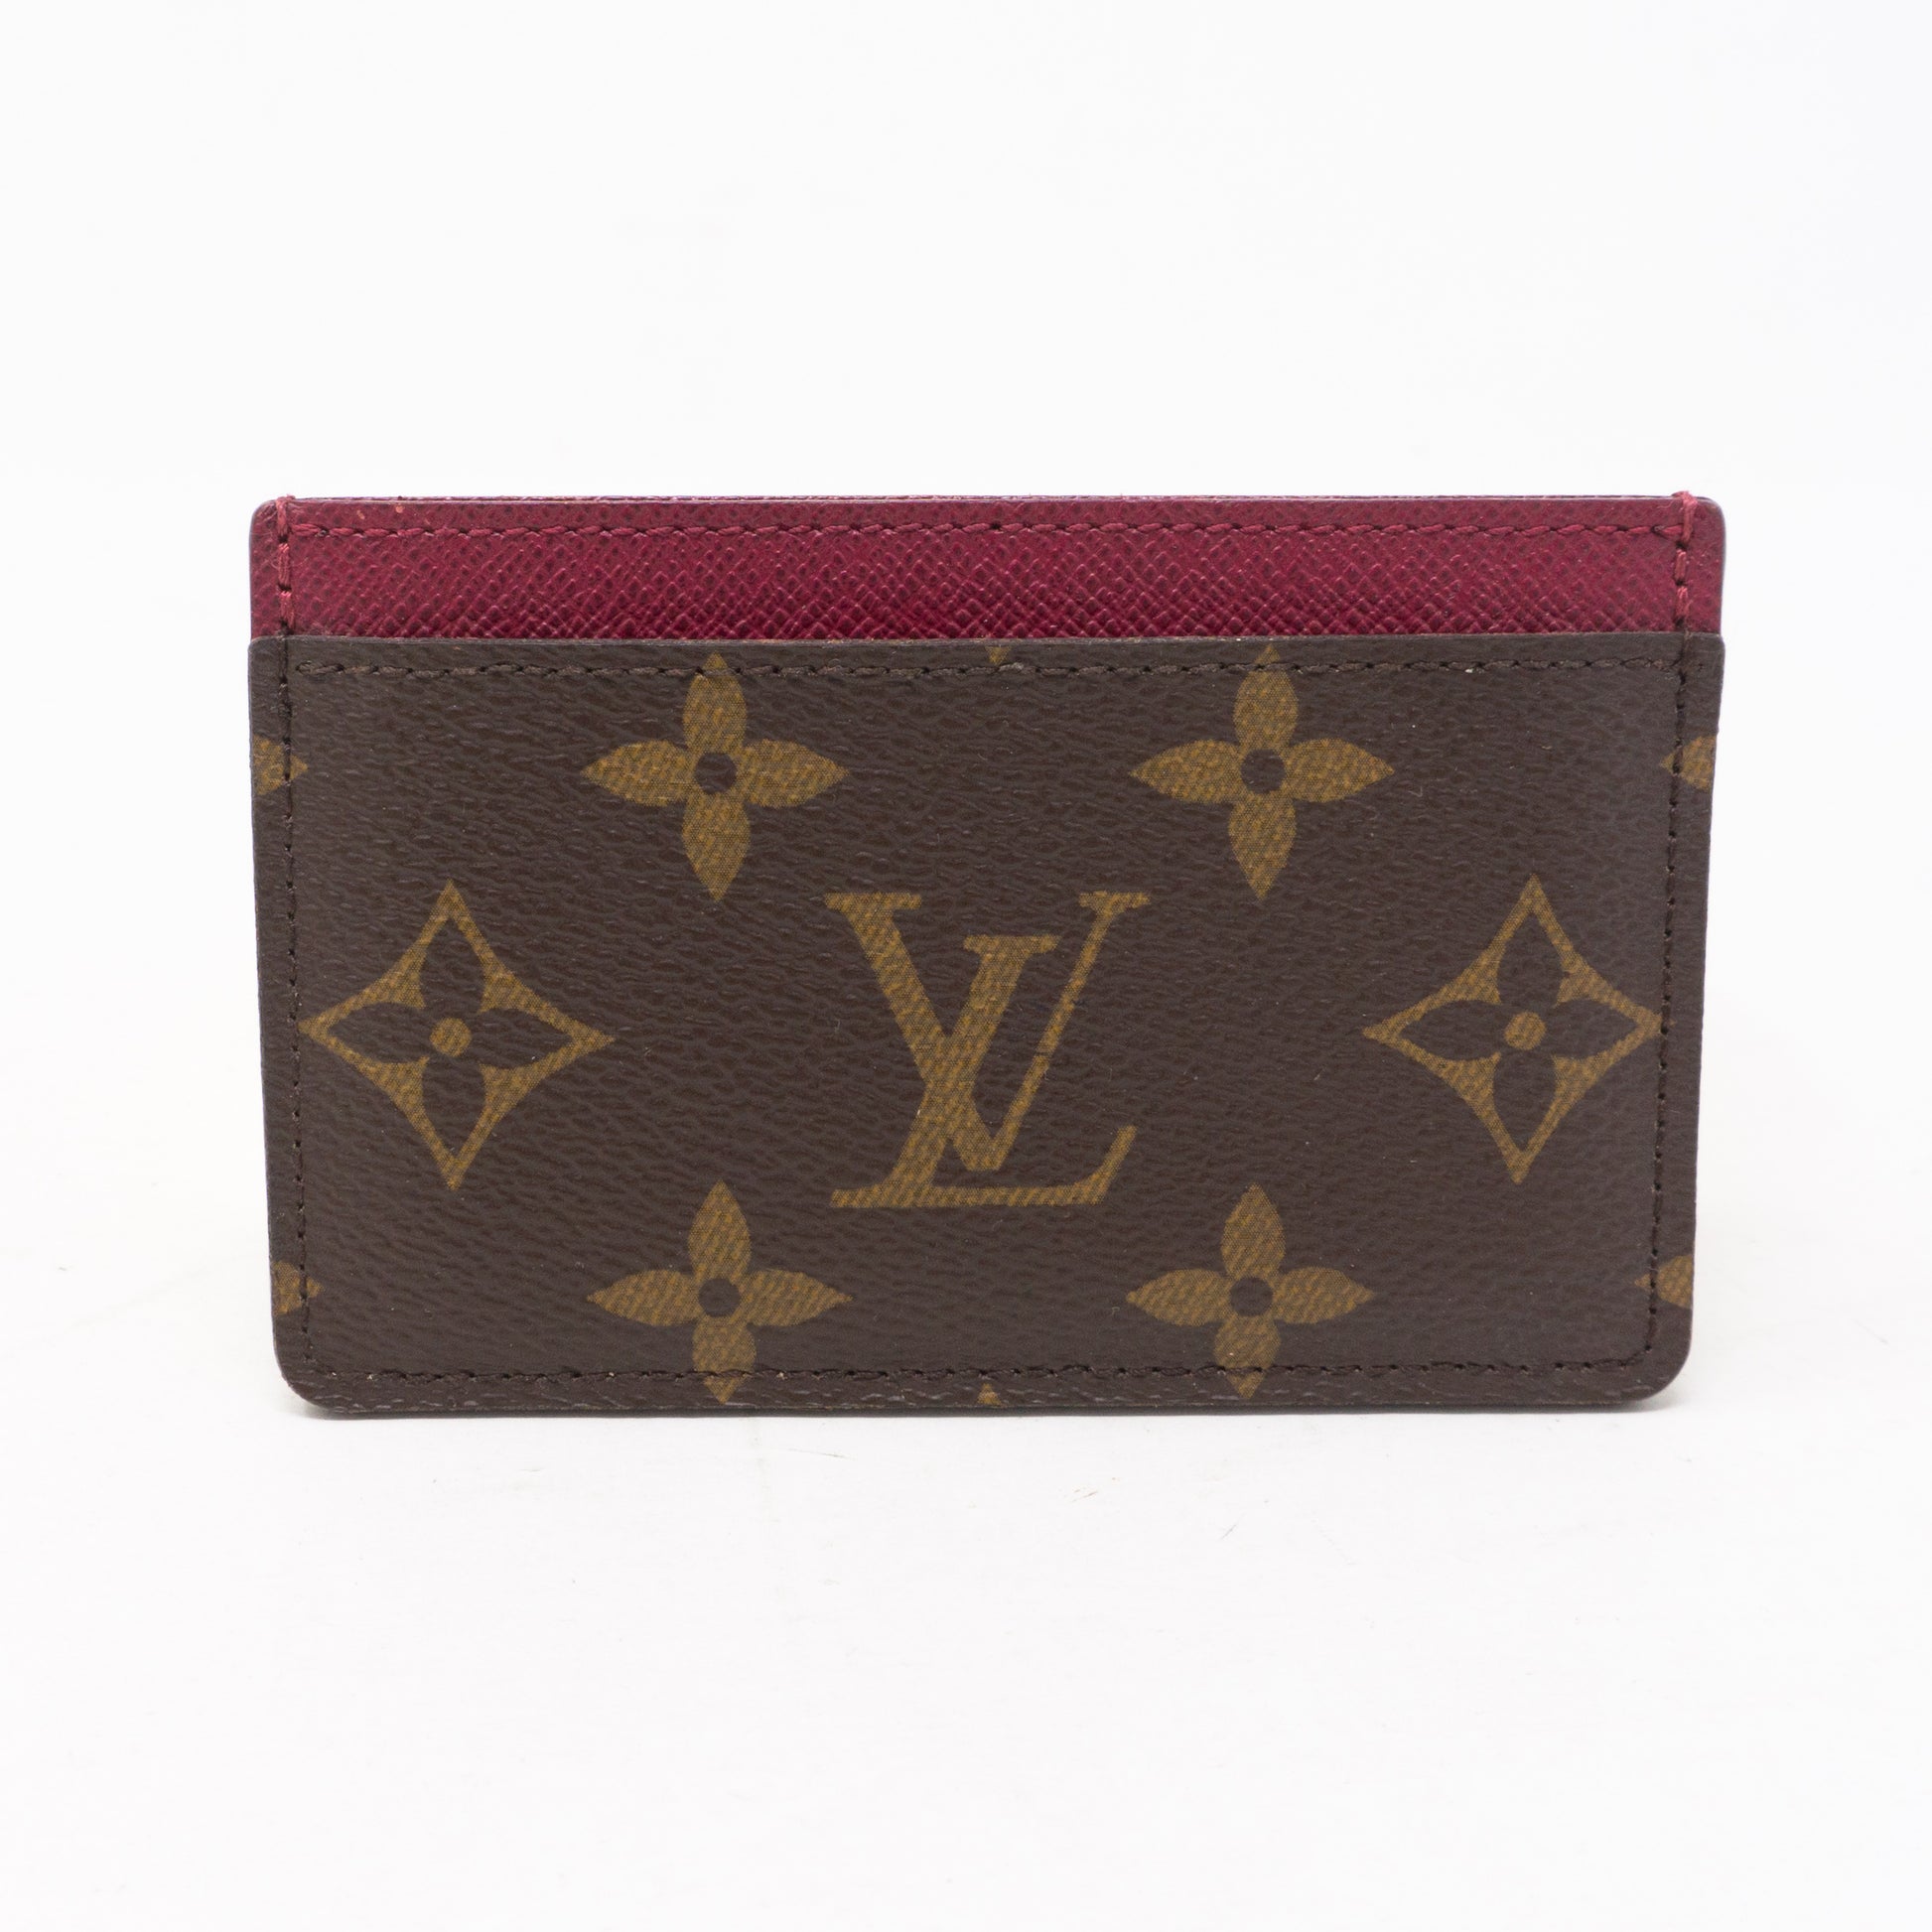 NWT Louis Vuitton card holder, classic monogram and fuchsia